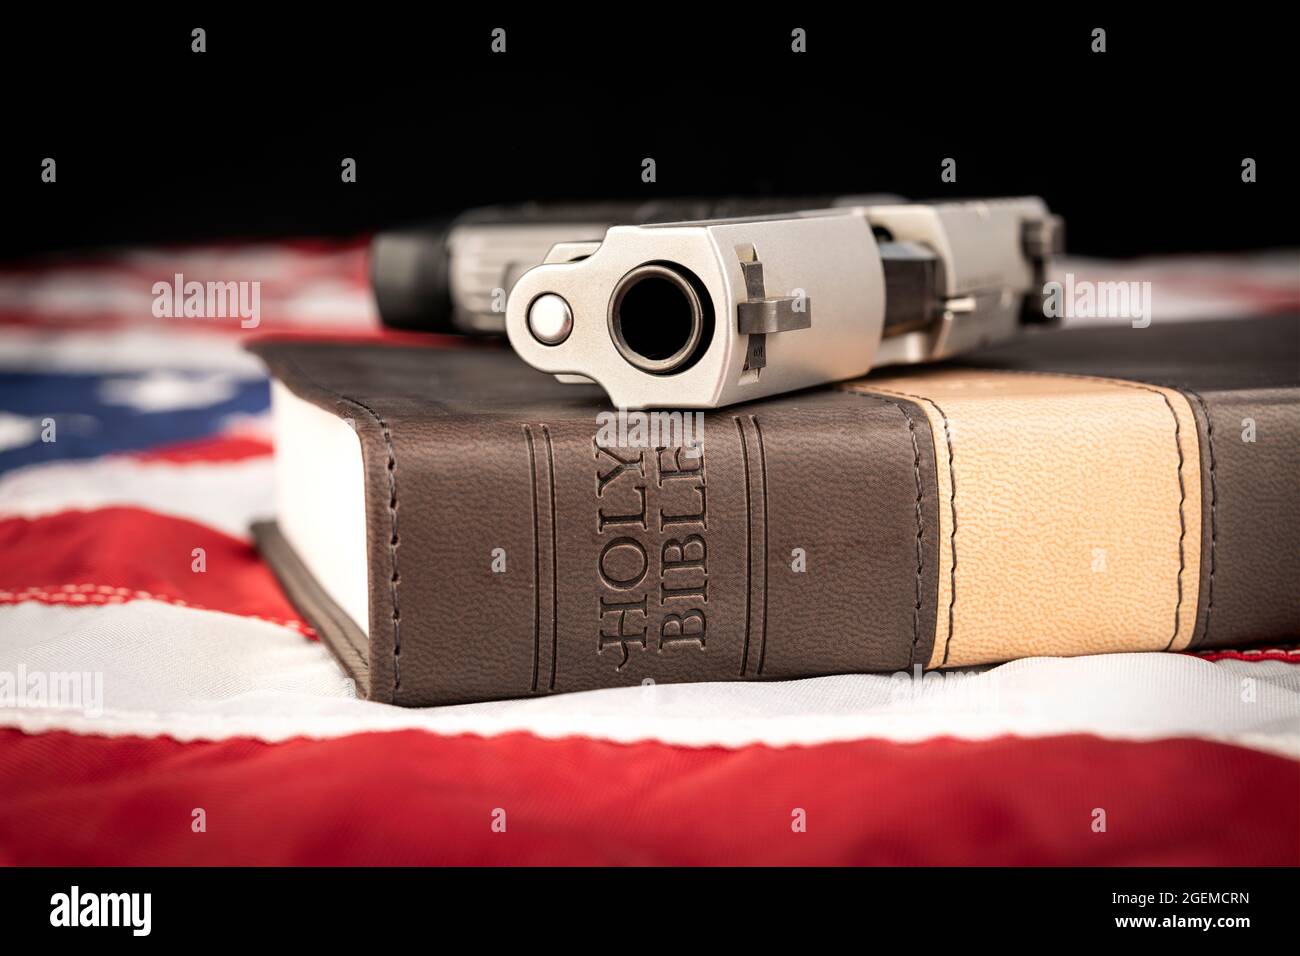 Eine Waffe und eine heilige bibel stehen auf einer amerikanischen Flagge, die Gott, Waffen und Religionsfreiheit repräsentiert. Stockfoto